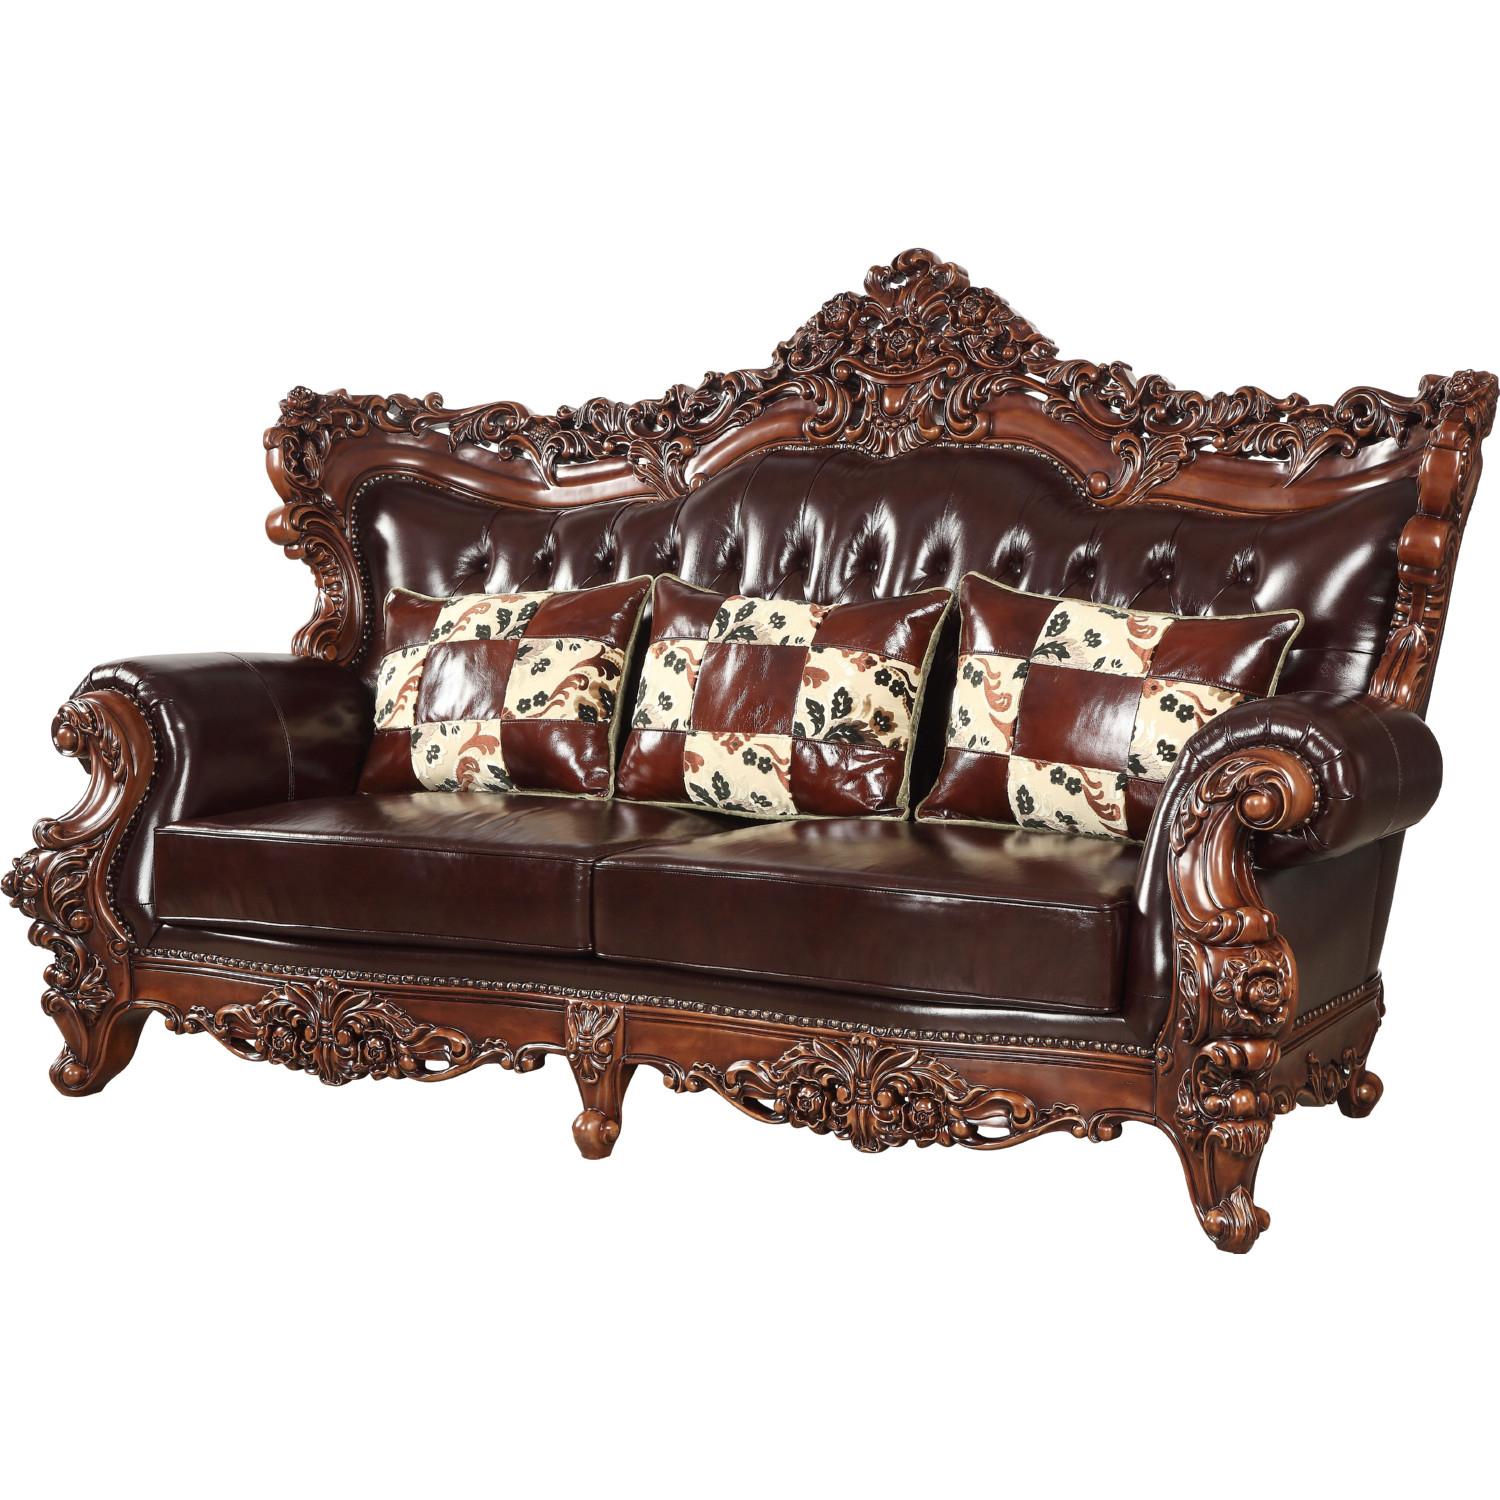 Classic, Traditional Sofa Forsythia 53070 53070-Forsythia in Dark Walnut, Espresso Leather